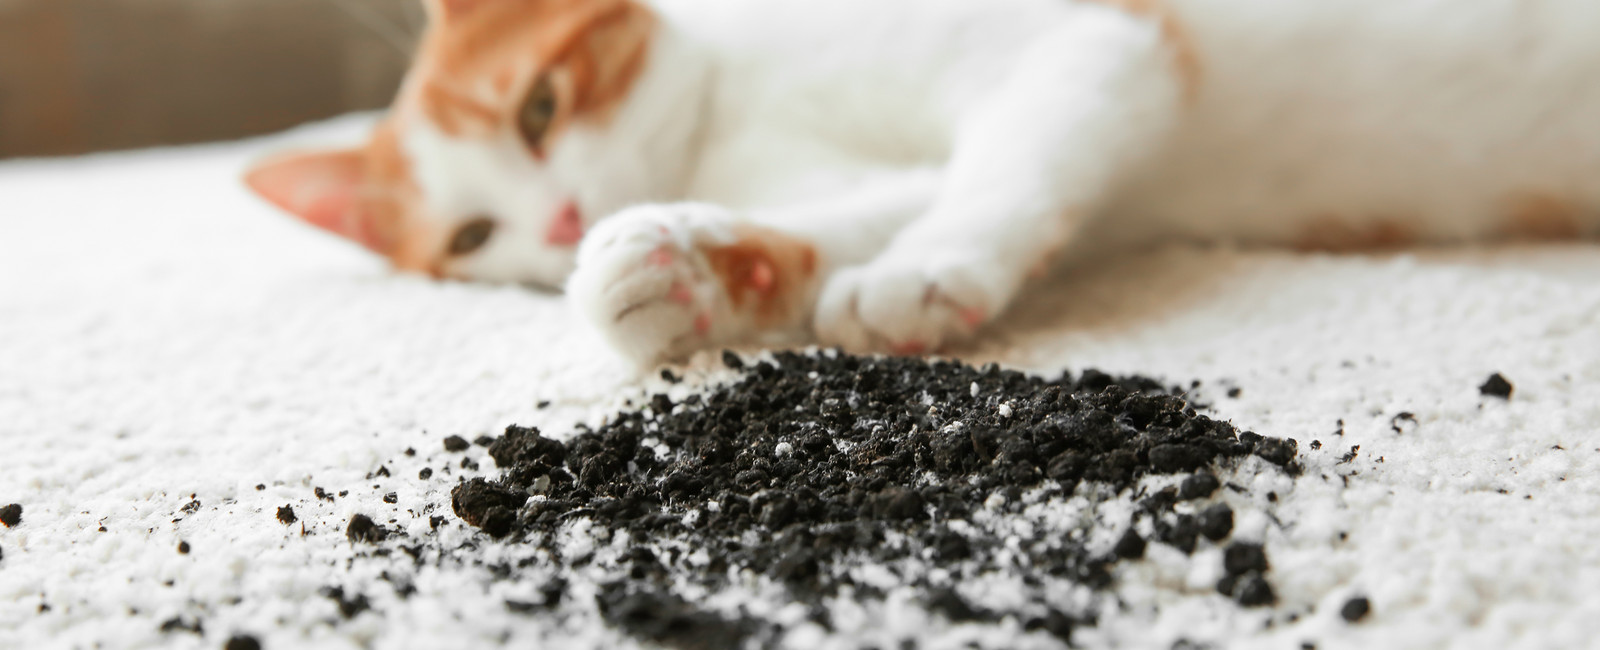 Katze lieg auf schmutzigem Teppich